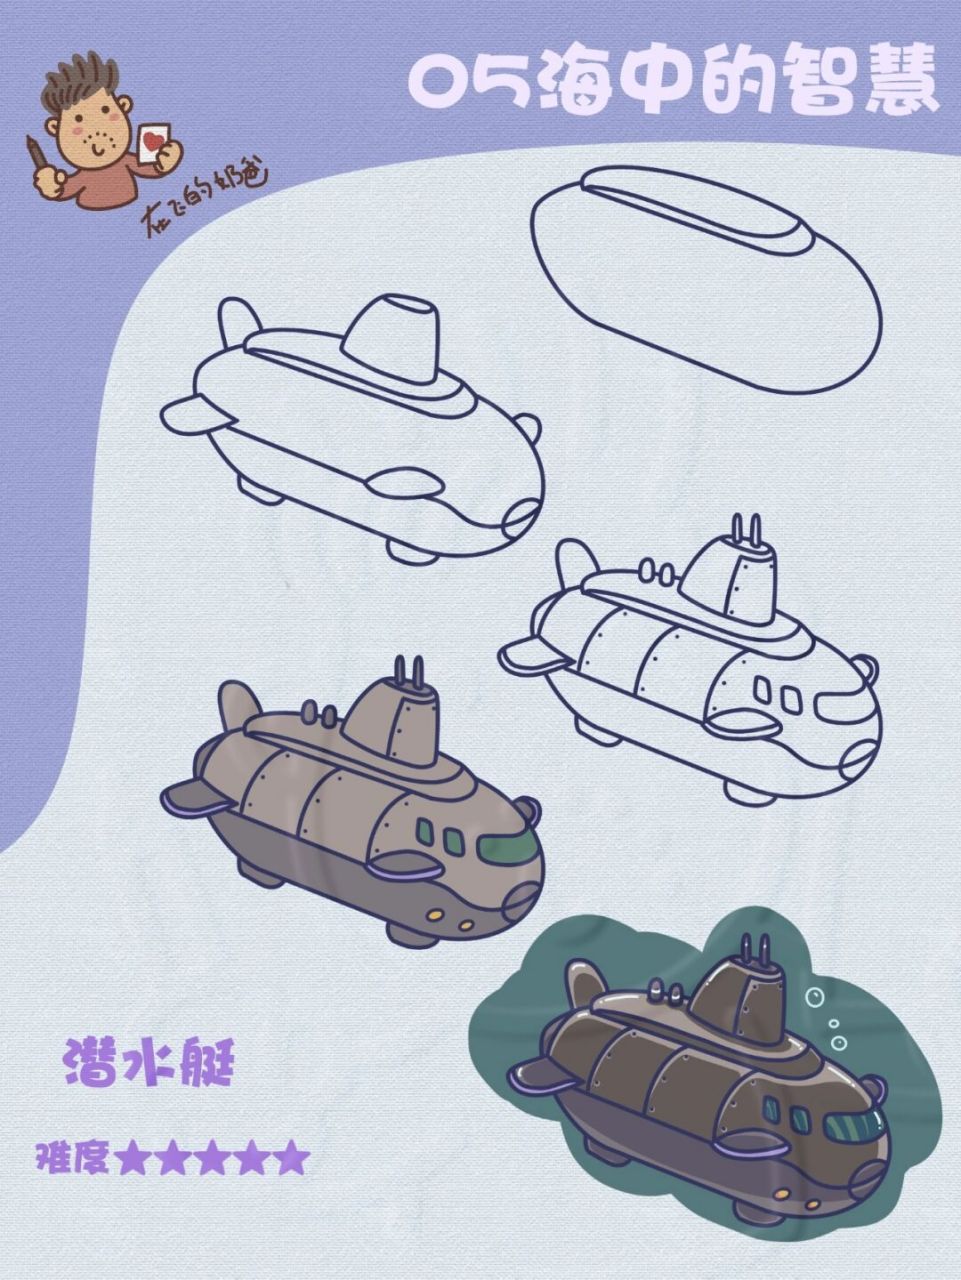 核潜艇简笔画军用图片